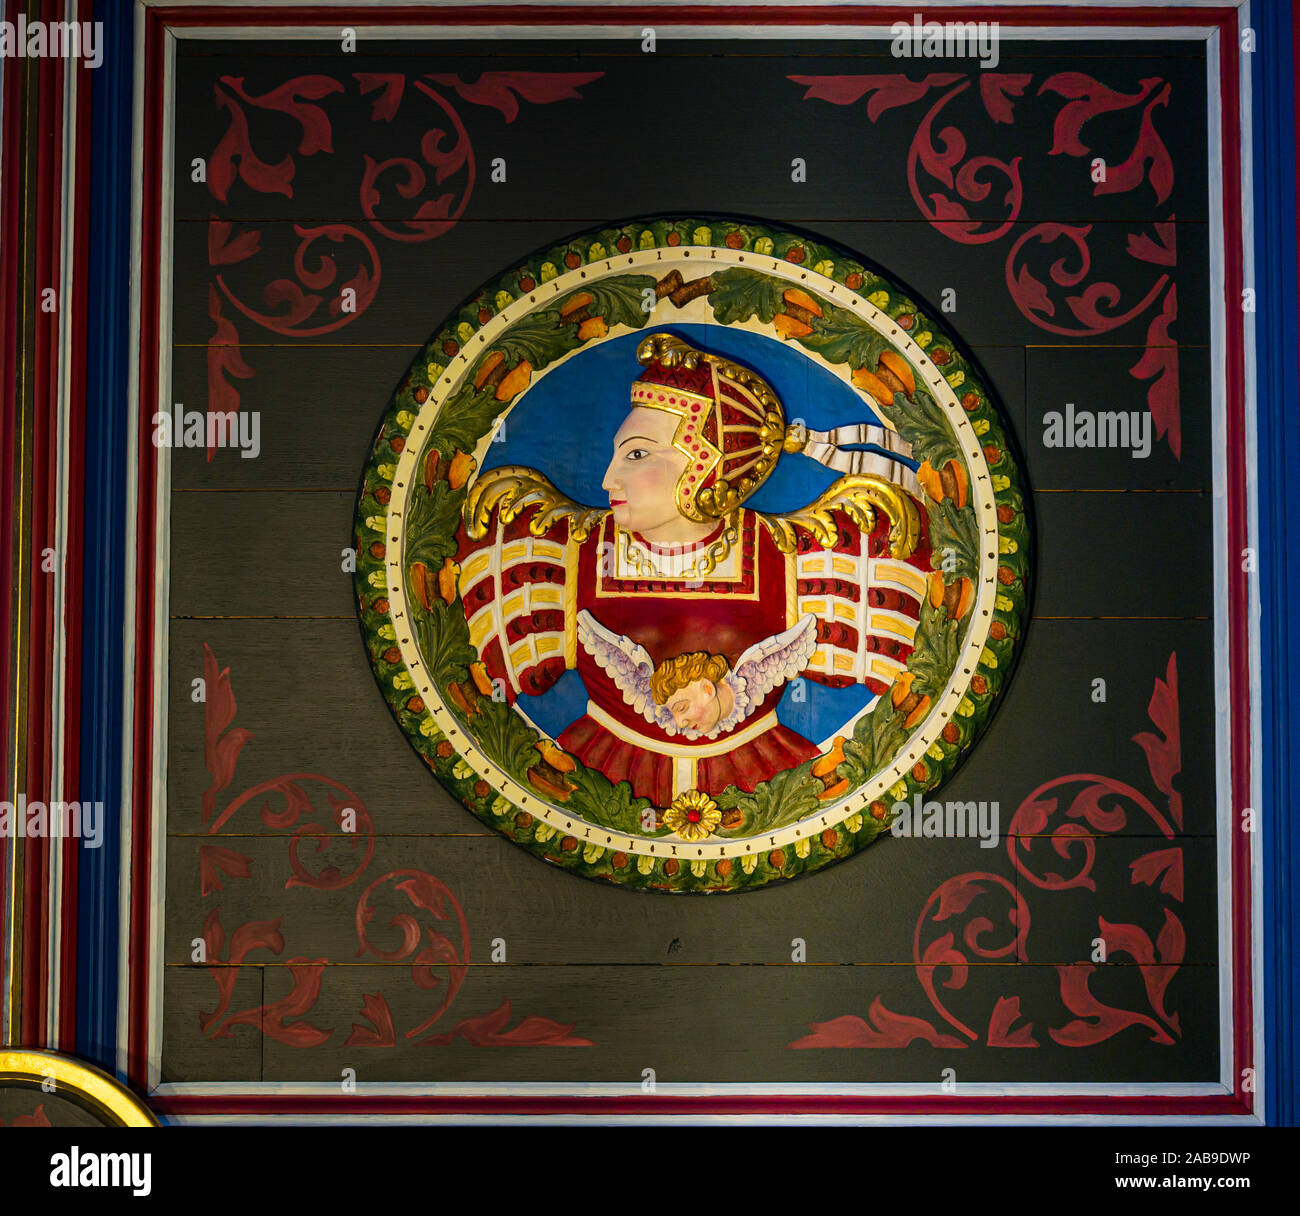 Motif de Royal Scottish reine sculpture sur bois coloré décoration de plafond, l'intérieur du palais, le château de Stirling, Scotland, UK Banque D'Images